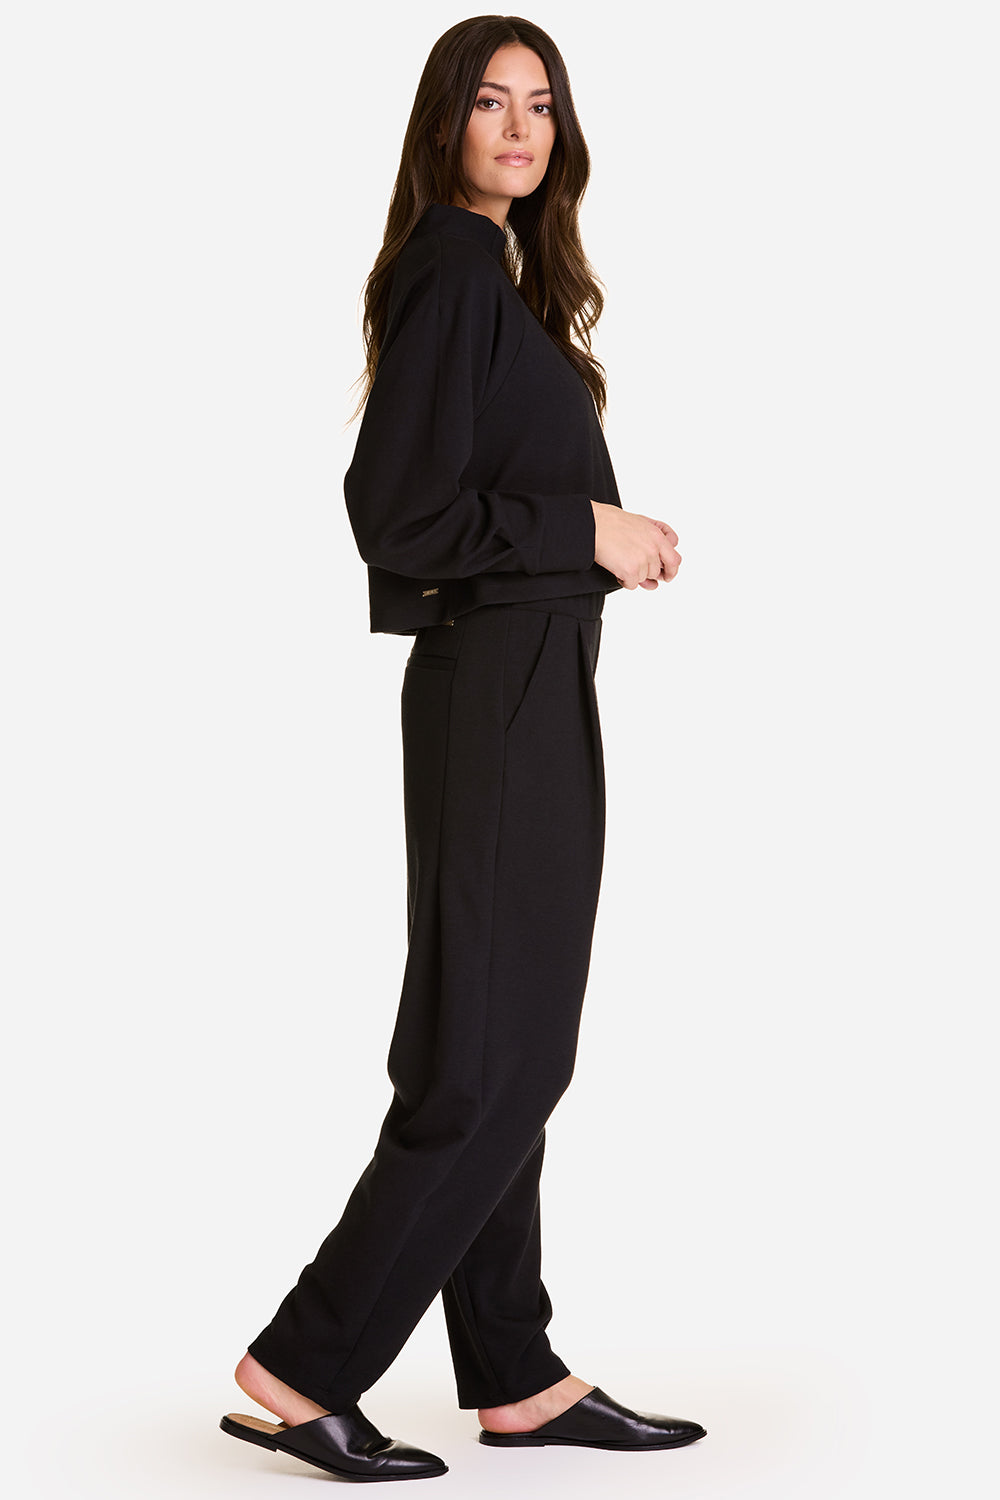 Alala women's Phoebe Mock Knit in Black